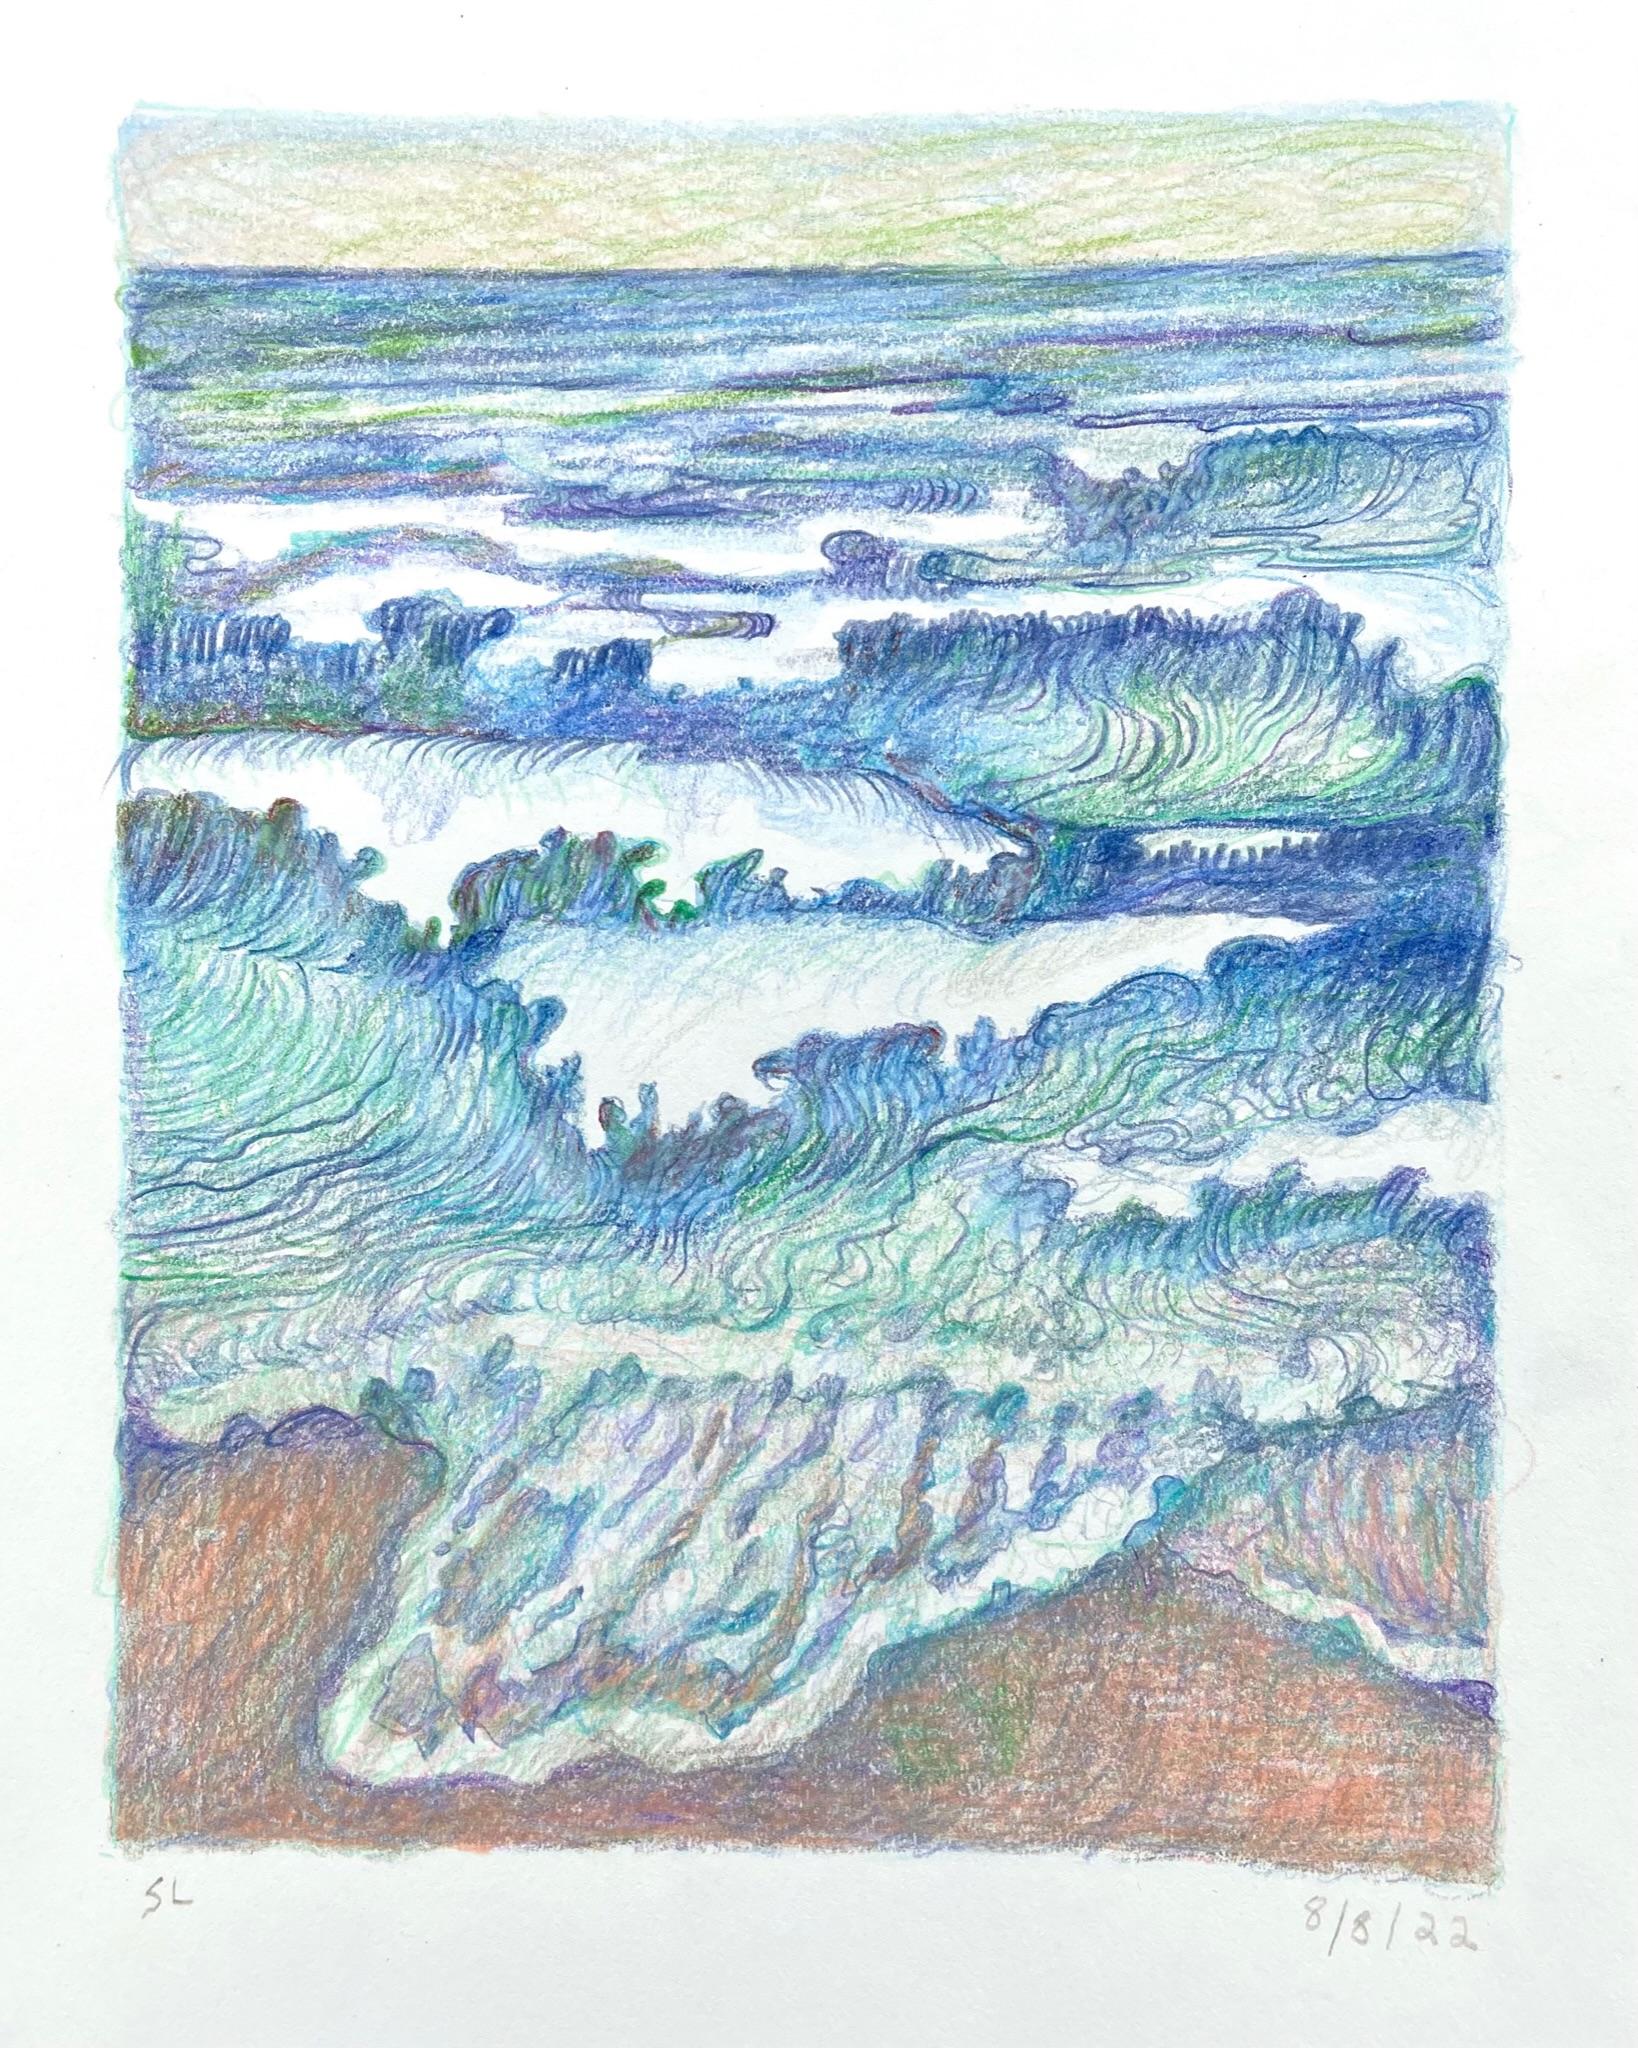 8-8-22, dessin de paysage abstrait impressionniste au crayon coloré